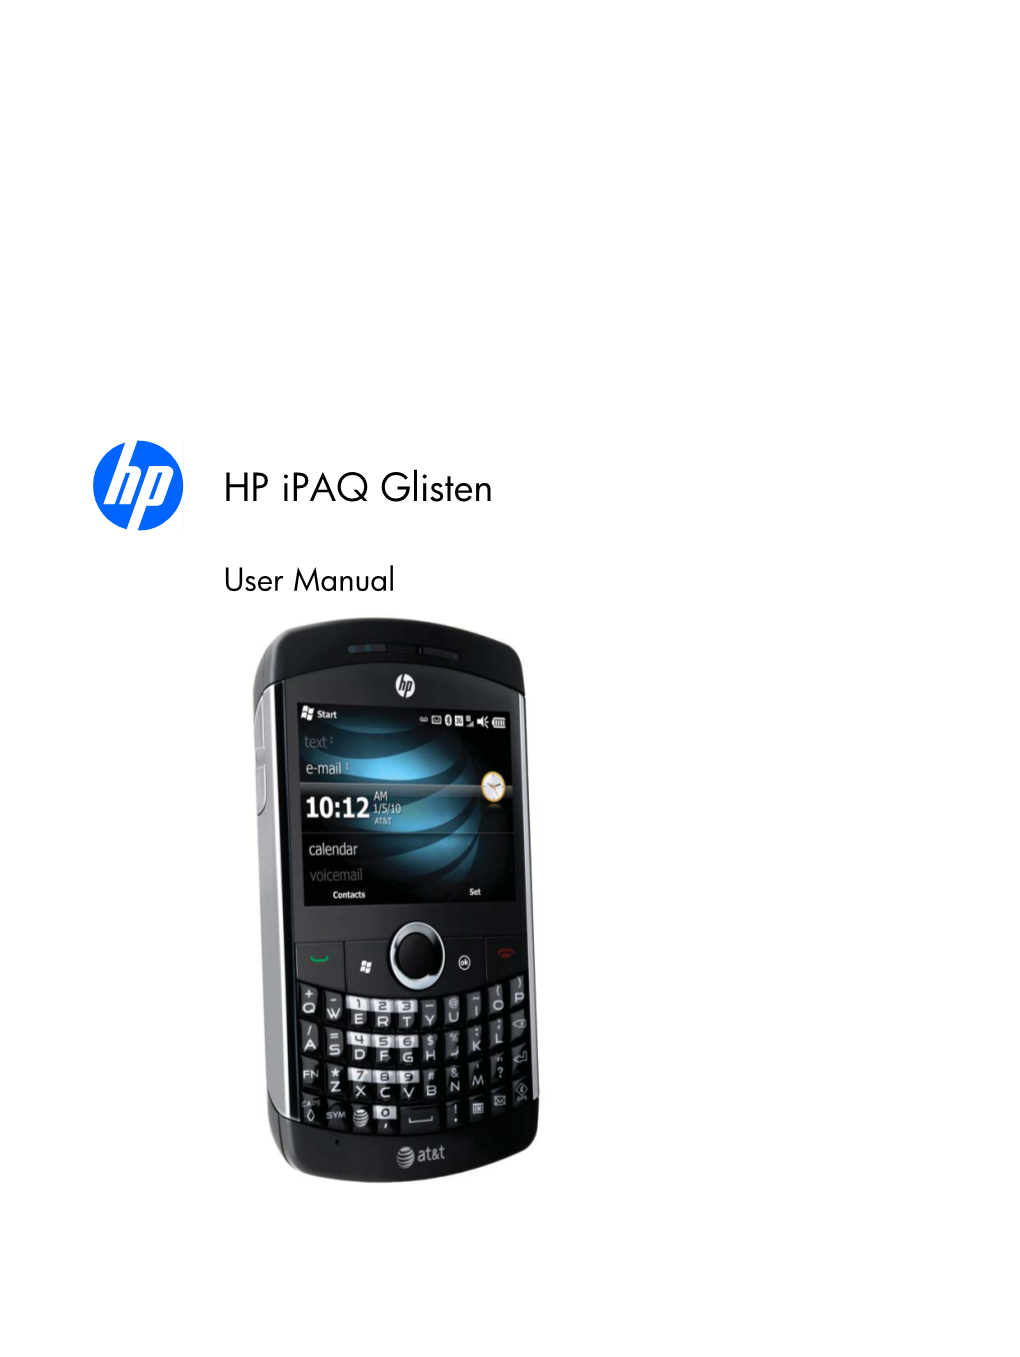 HP Ipaq Glisten